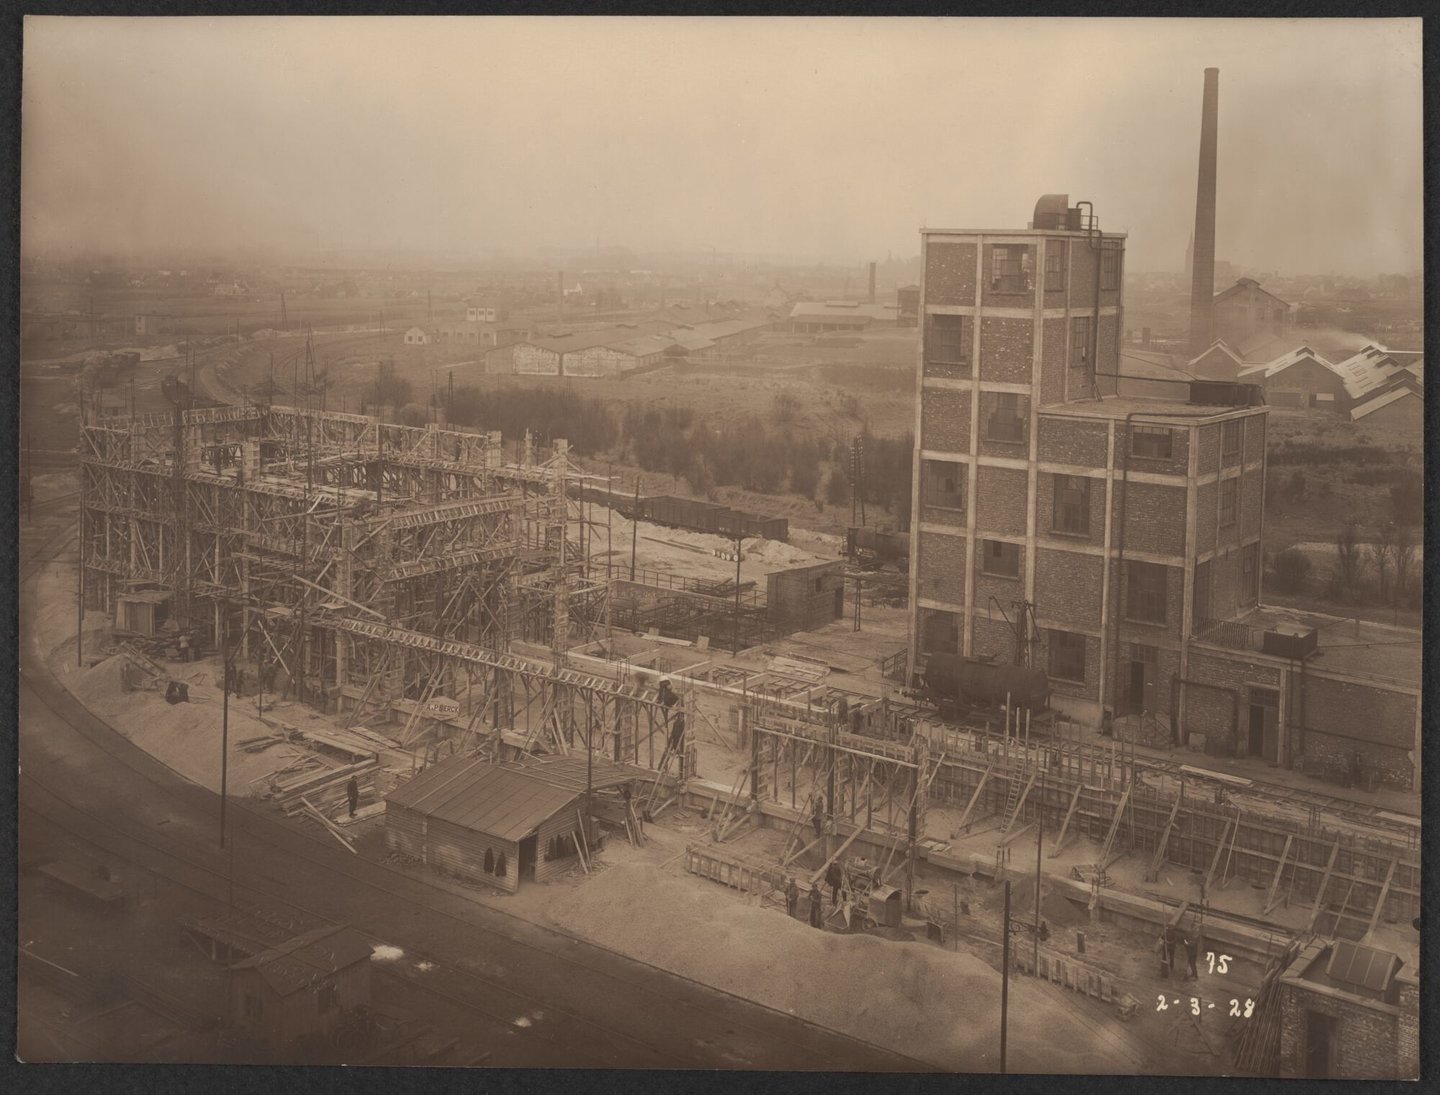 Bouw van zwavelzuurfabriek van cokesfabriek Kuhlmann in Zelzate